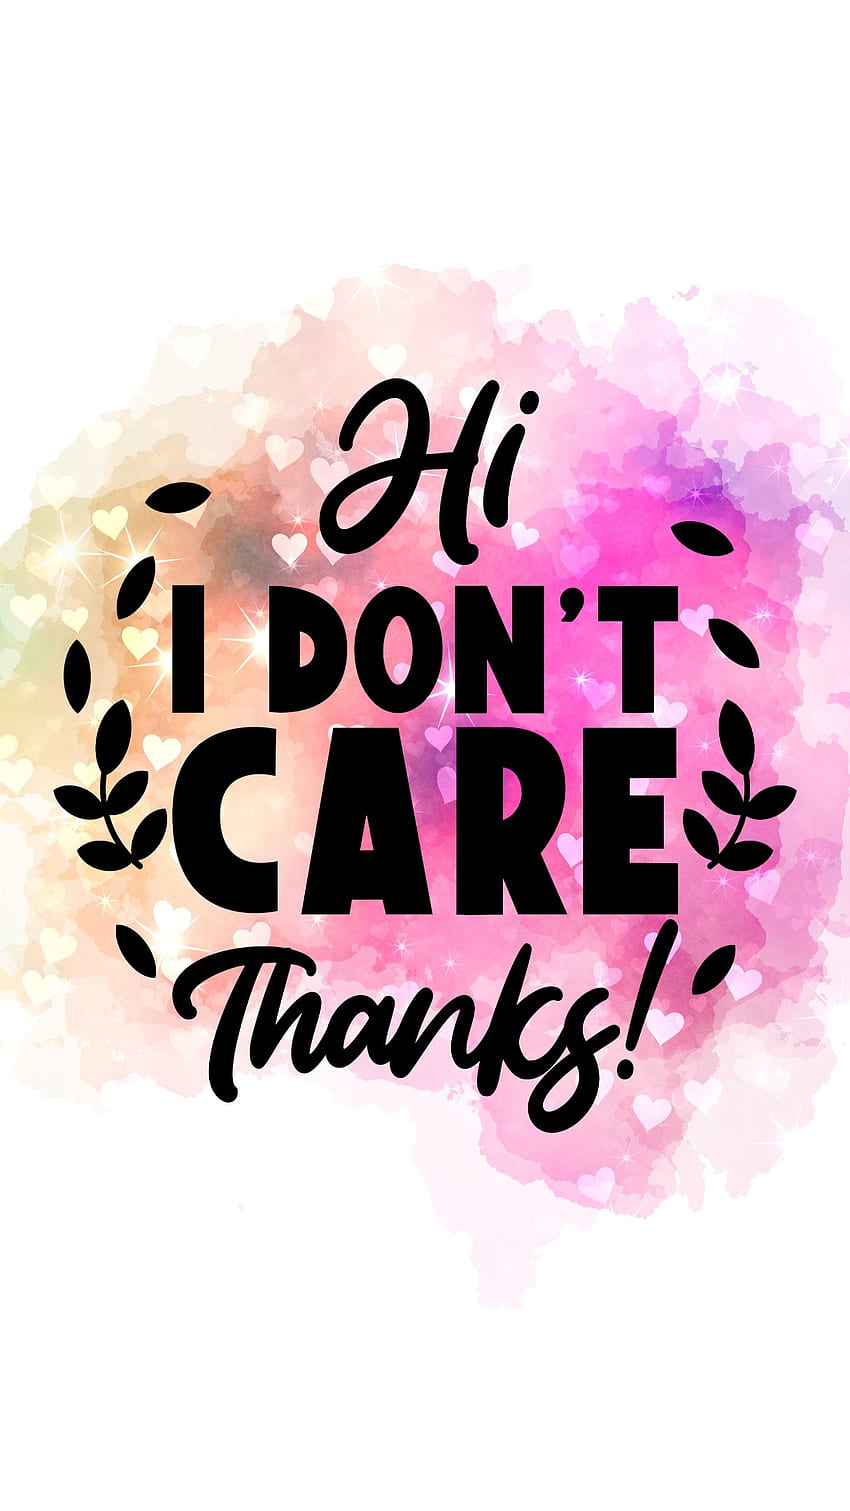 Hi I Don't Care, thanks, dontcare HD phone wallpaper | Pxfuel